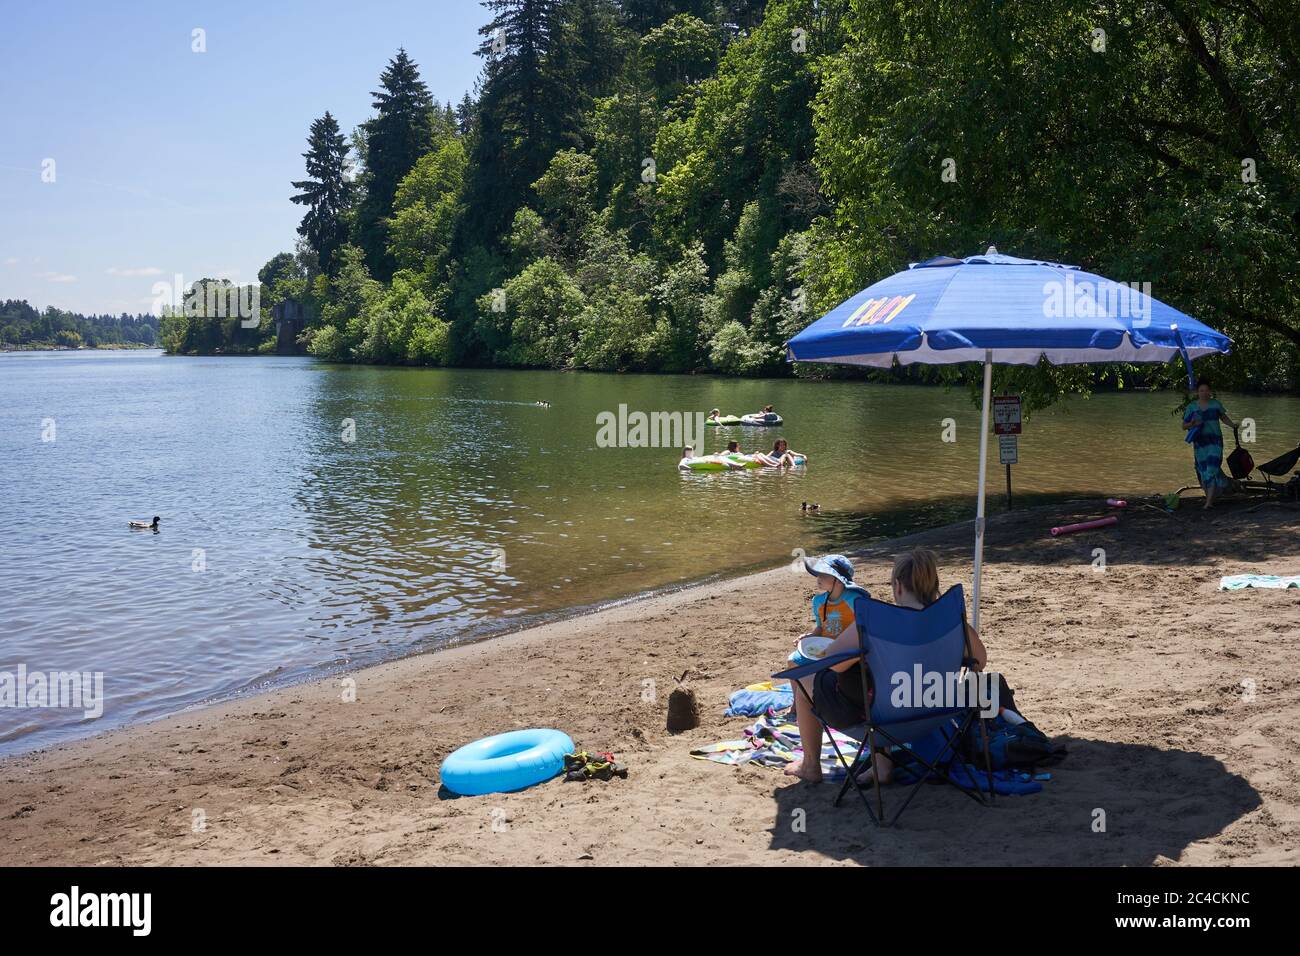 Las familias disfrutan del aire libre en la playa del río Willamette en el lago Oswego, Oregón, mientras el verano comienza en medio de la pandemia del coronavirus el 25 de junio de 2020. Foto de stock